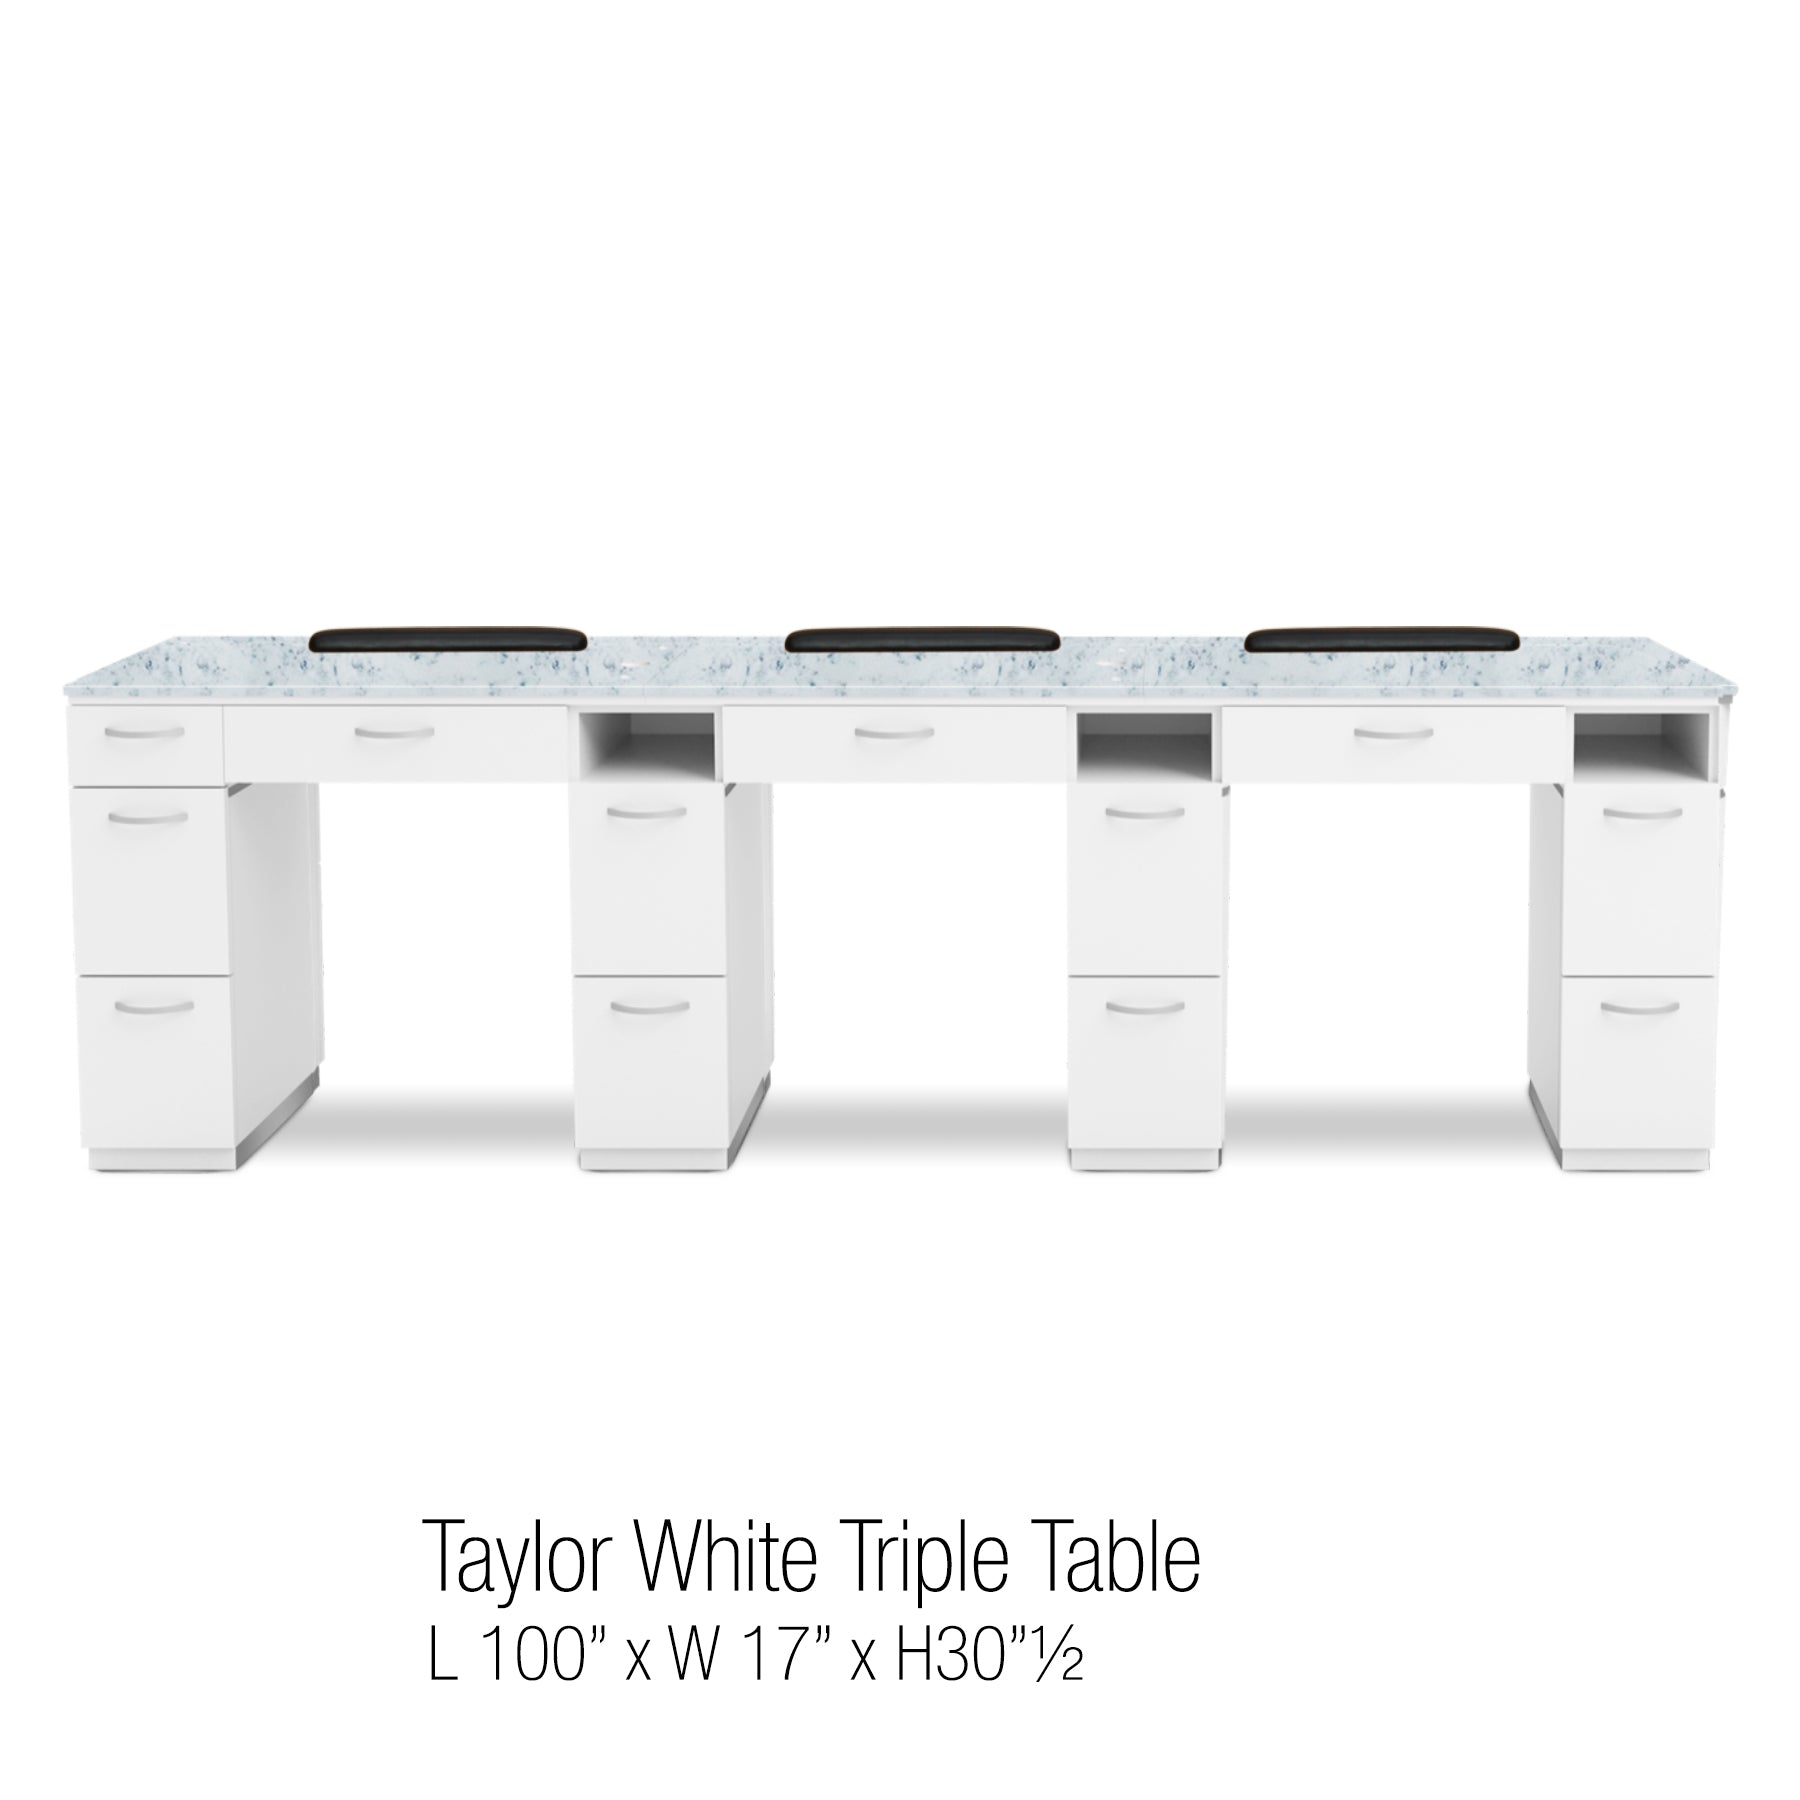 Taylor White Triple Table no UV